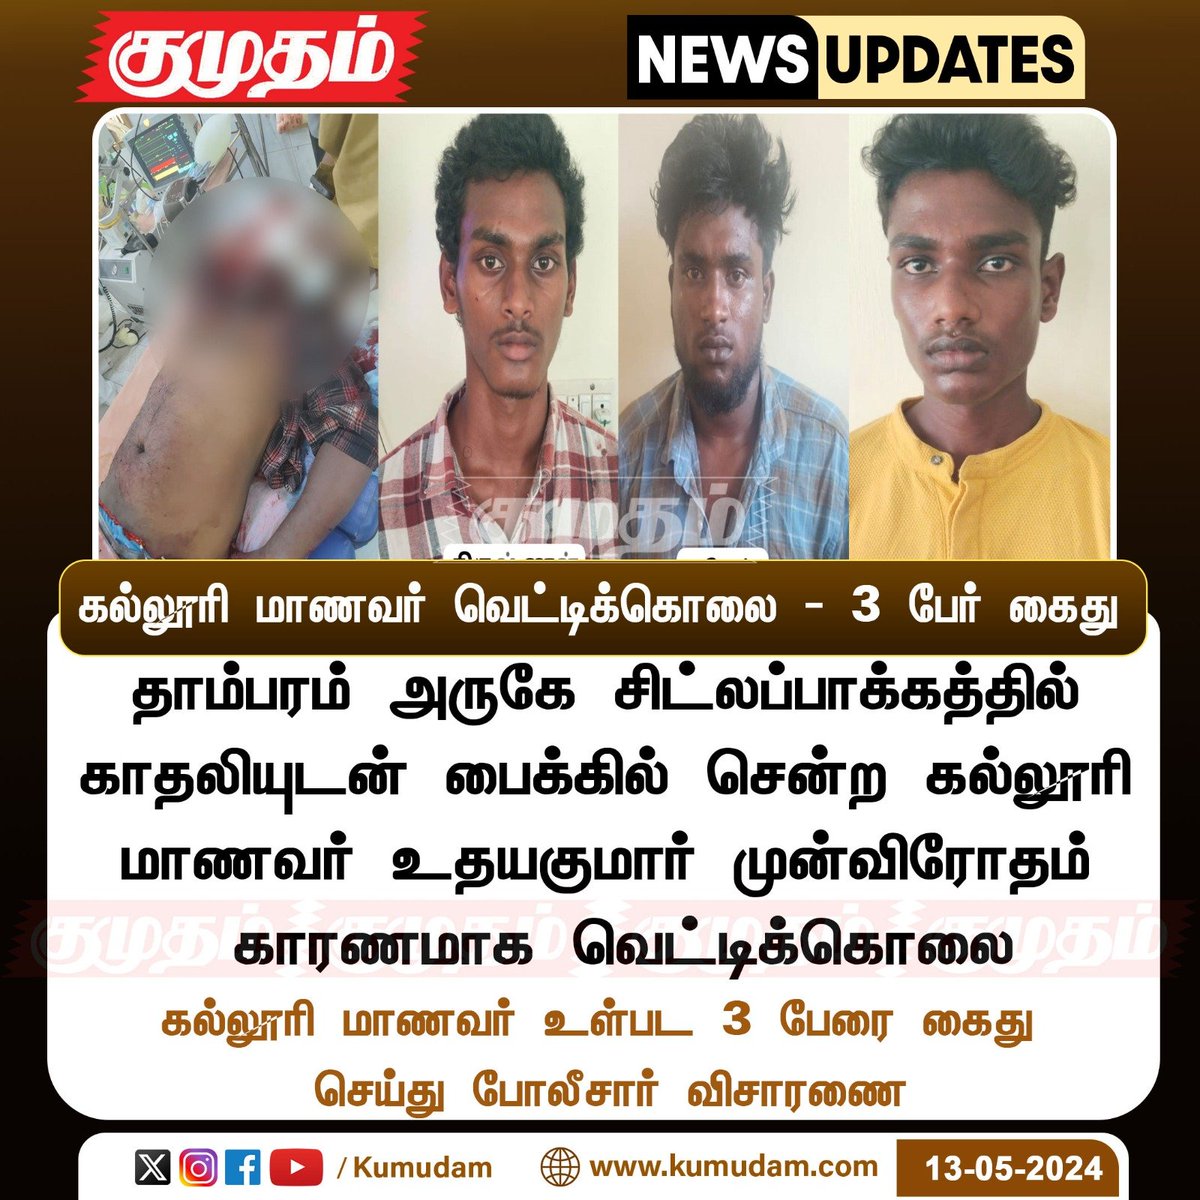 கல்லூரி மாணவர் வெட்டிக்கொலை - 3 பேர் கைது Kumudam.com| #Chennai | #CollegeStudent | #death | #Arrest | #Investigation | #police | @avadipolice | @chennaipolice_